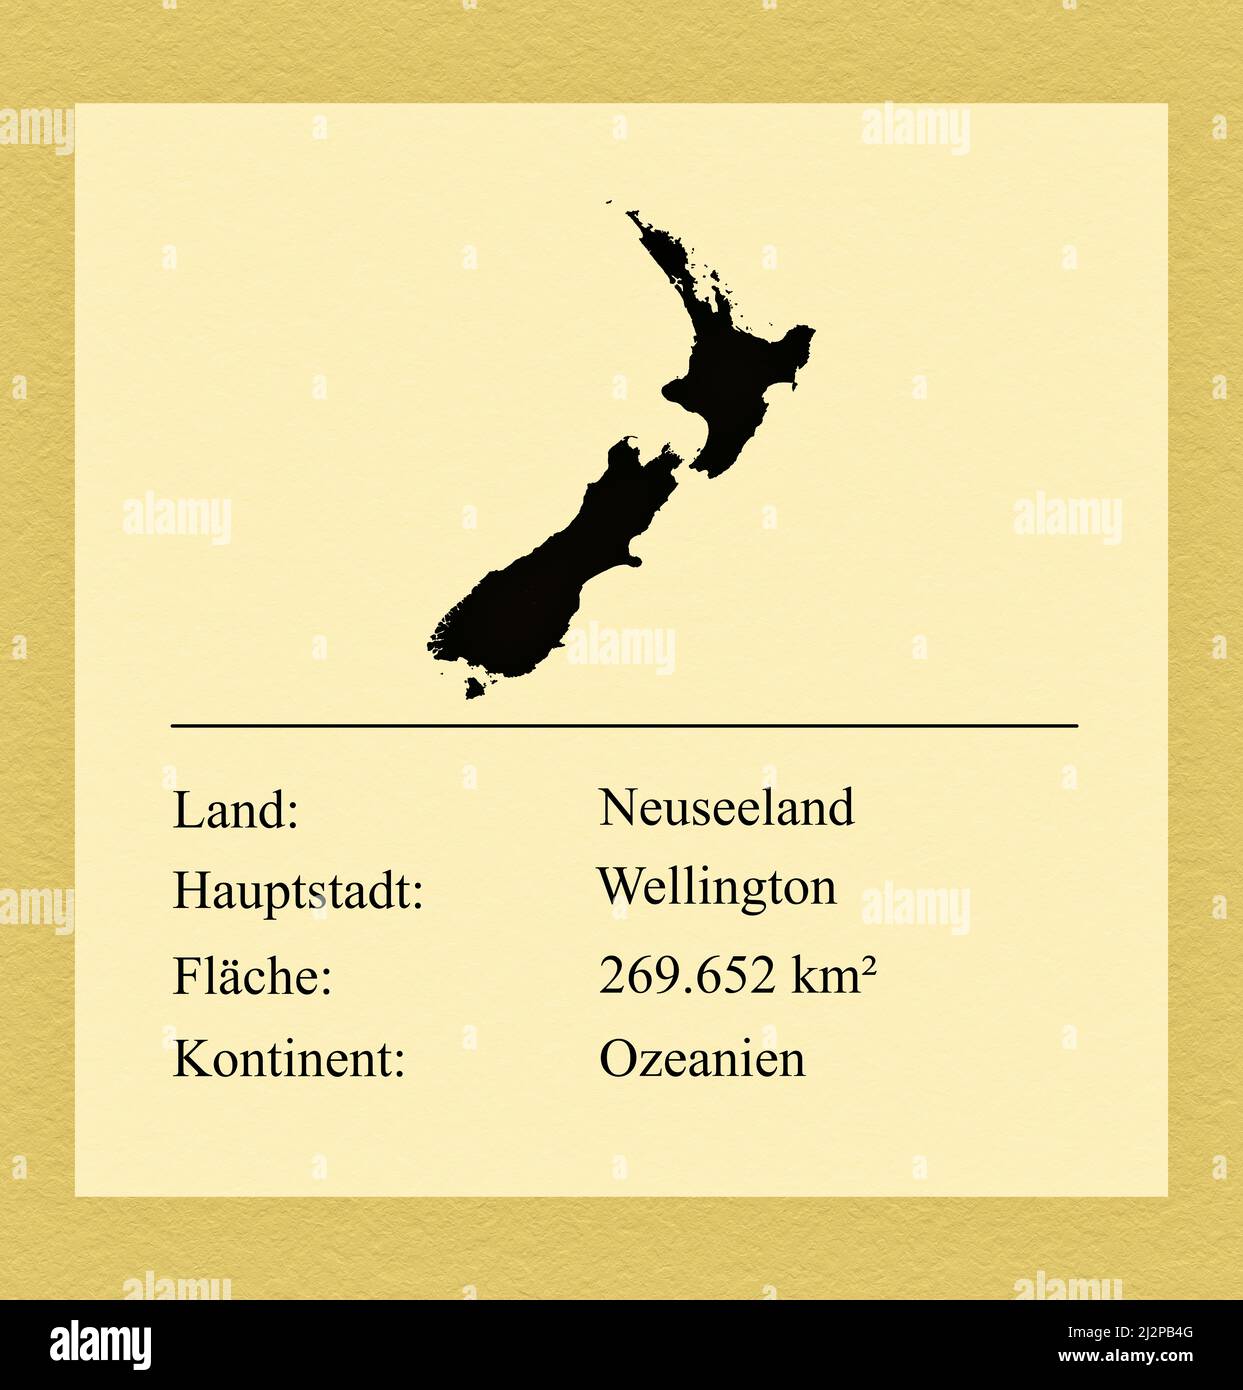 Umrisse des Landes Neuseeland, darunter ein kleiner Steckbrief mit Ländernamen, Hauptstadt, Fläche und Kontinent Foto de stock